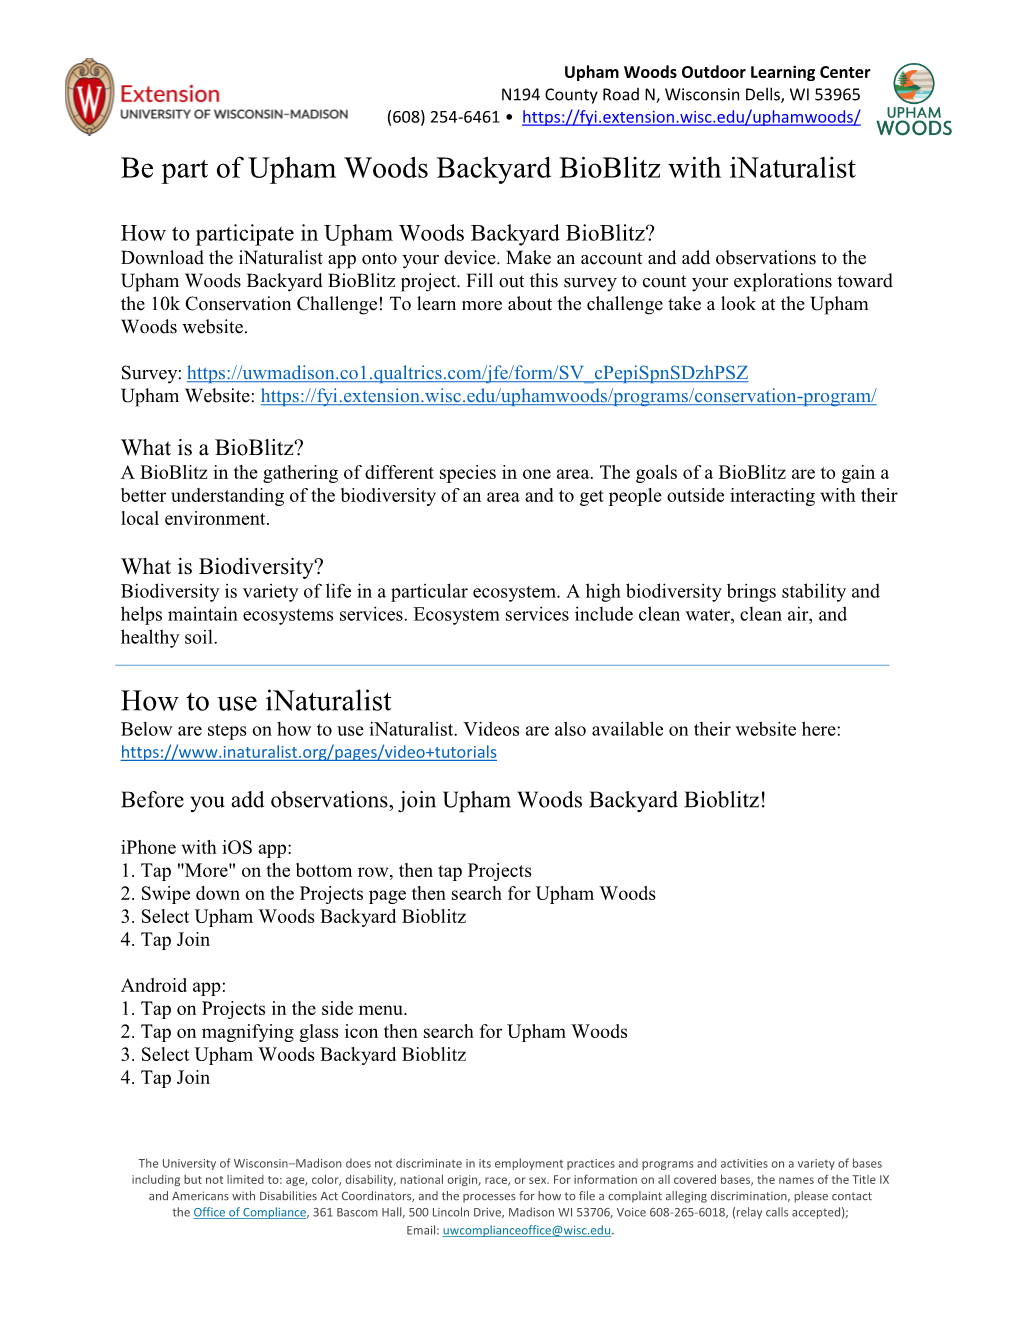 Upham Woods Backyard Bioblitz with Inaturalist